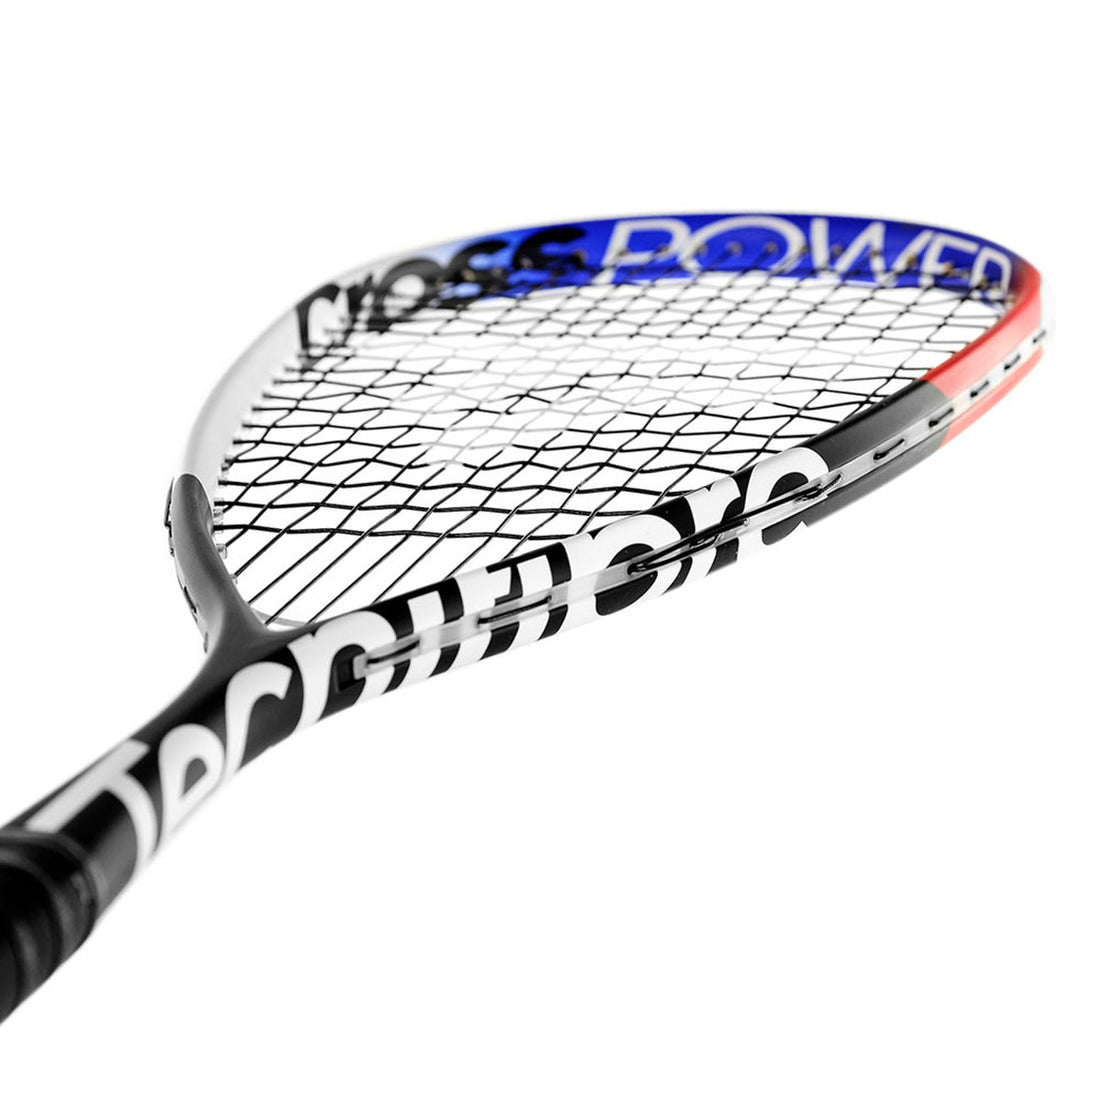 Tecnifibre Cross Power Bk Squash Racquet